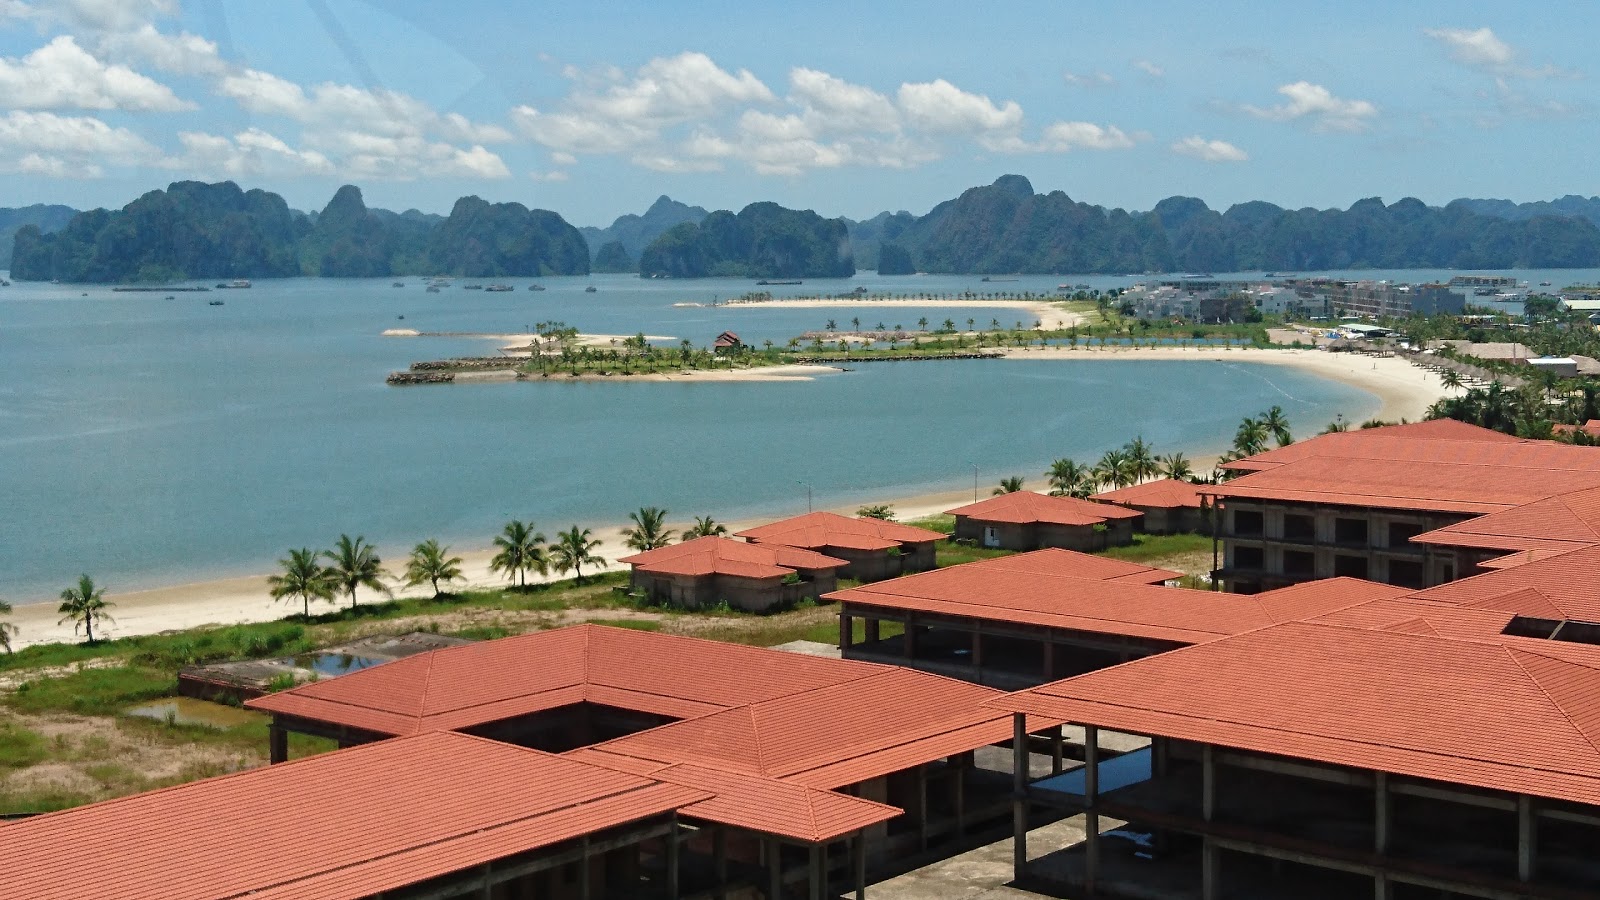 Φωτογραφία του Tuan Chau Resort beach με μακρά ευθεία ακτή